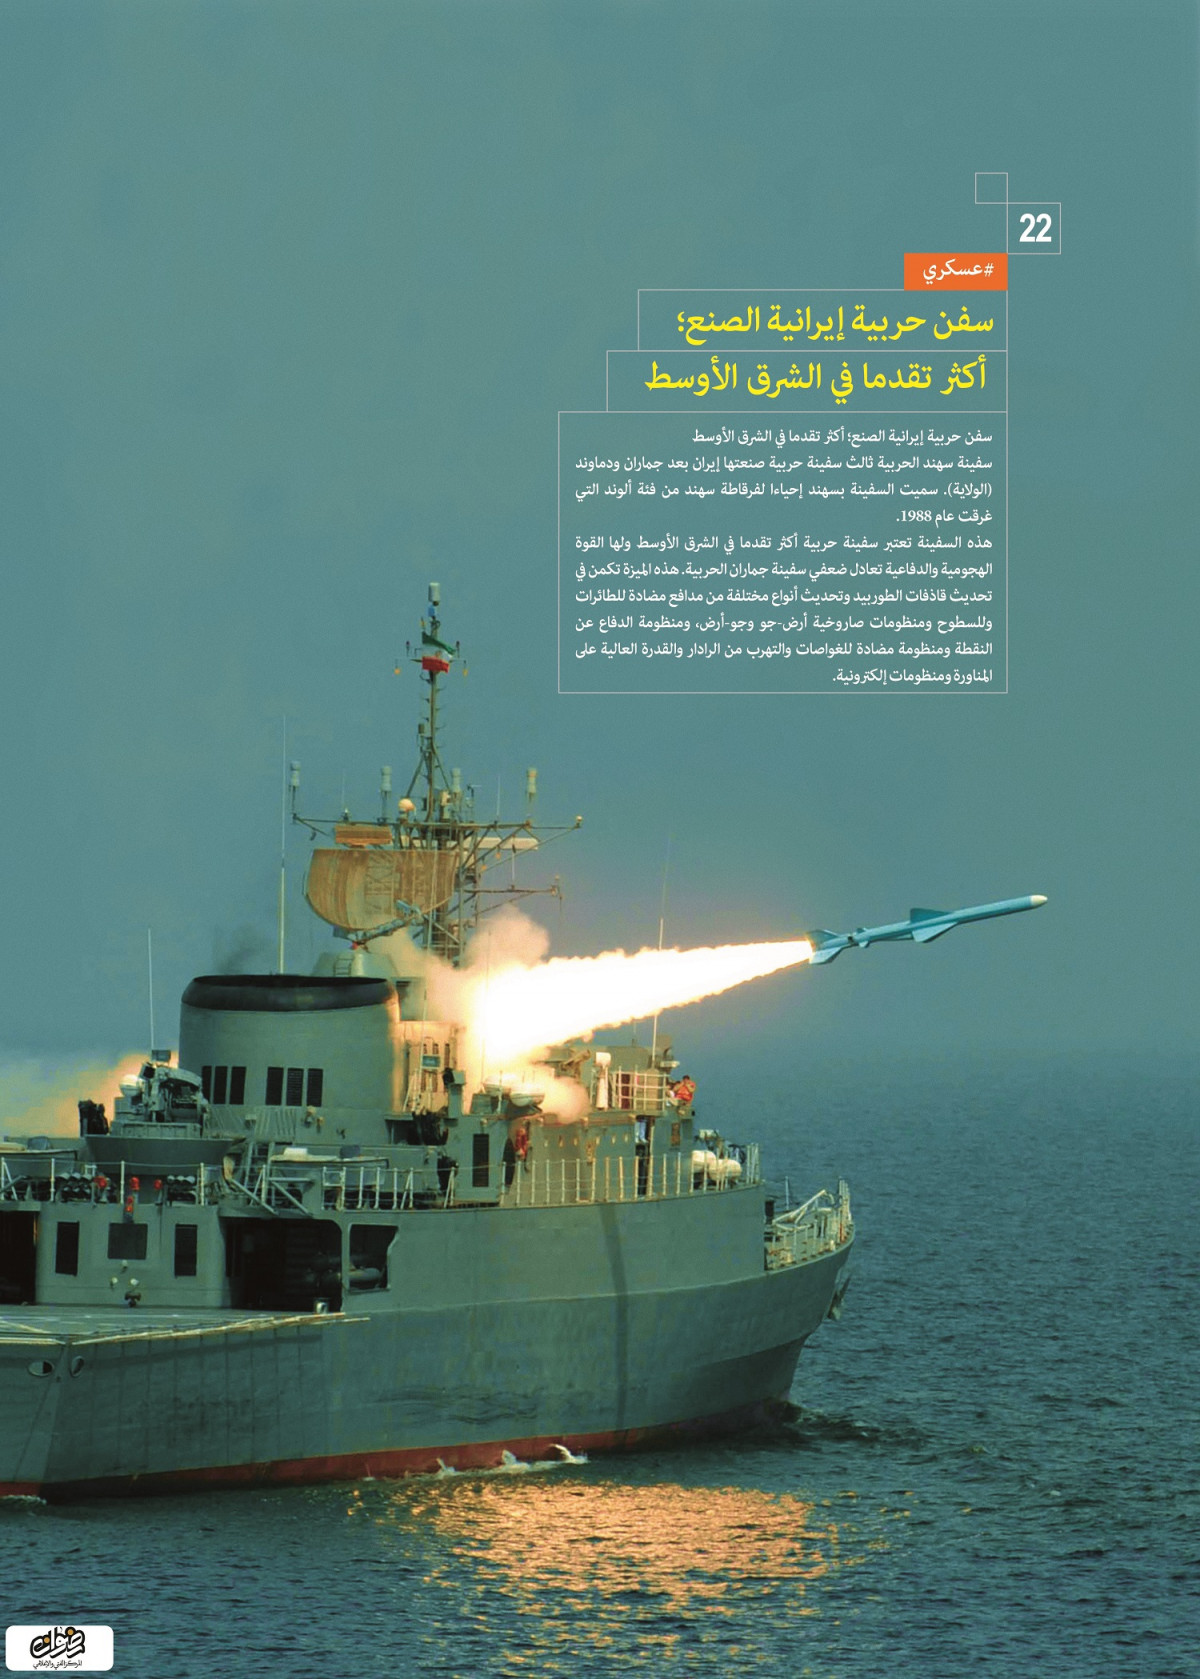 إنجازات العسكرية / سفن حربية إيرانية الصنع أكثر تقدما في الشرق الأوسط